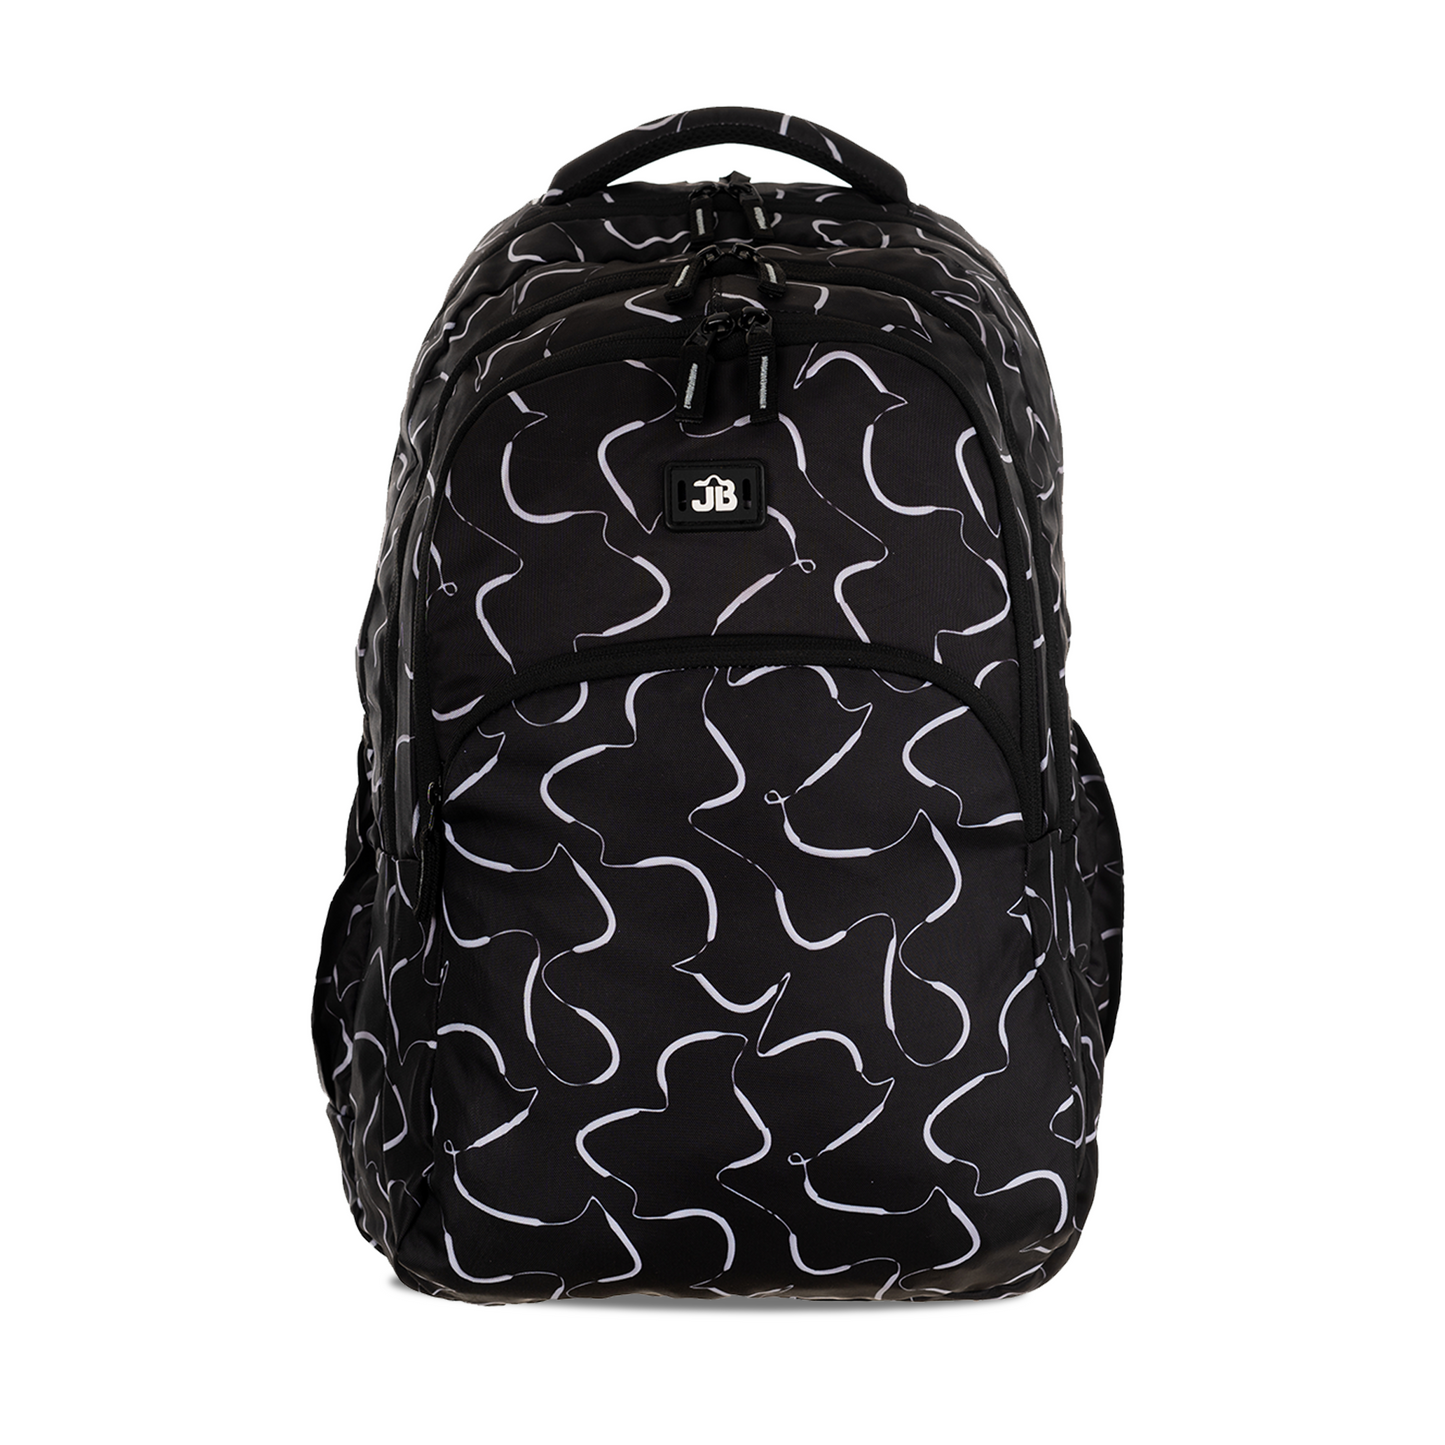 Black Printed School/College Backpack -19 Inch (Black)